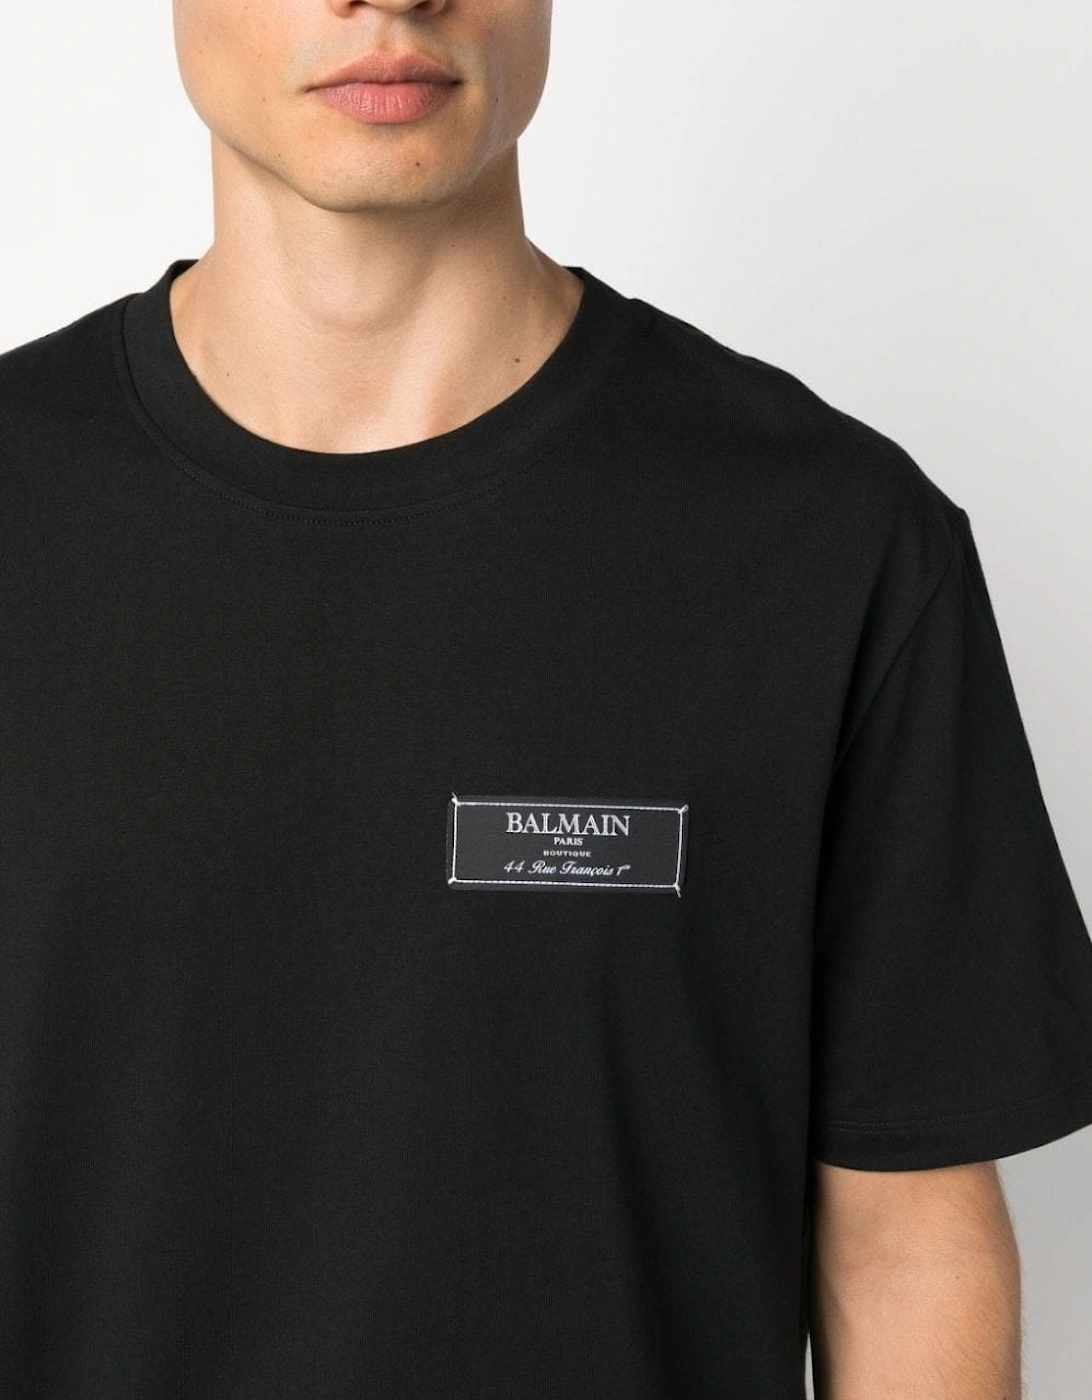 Pierre Label T-shirt Black